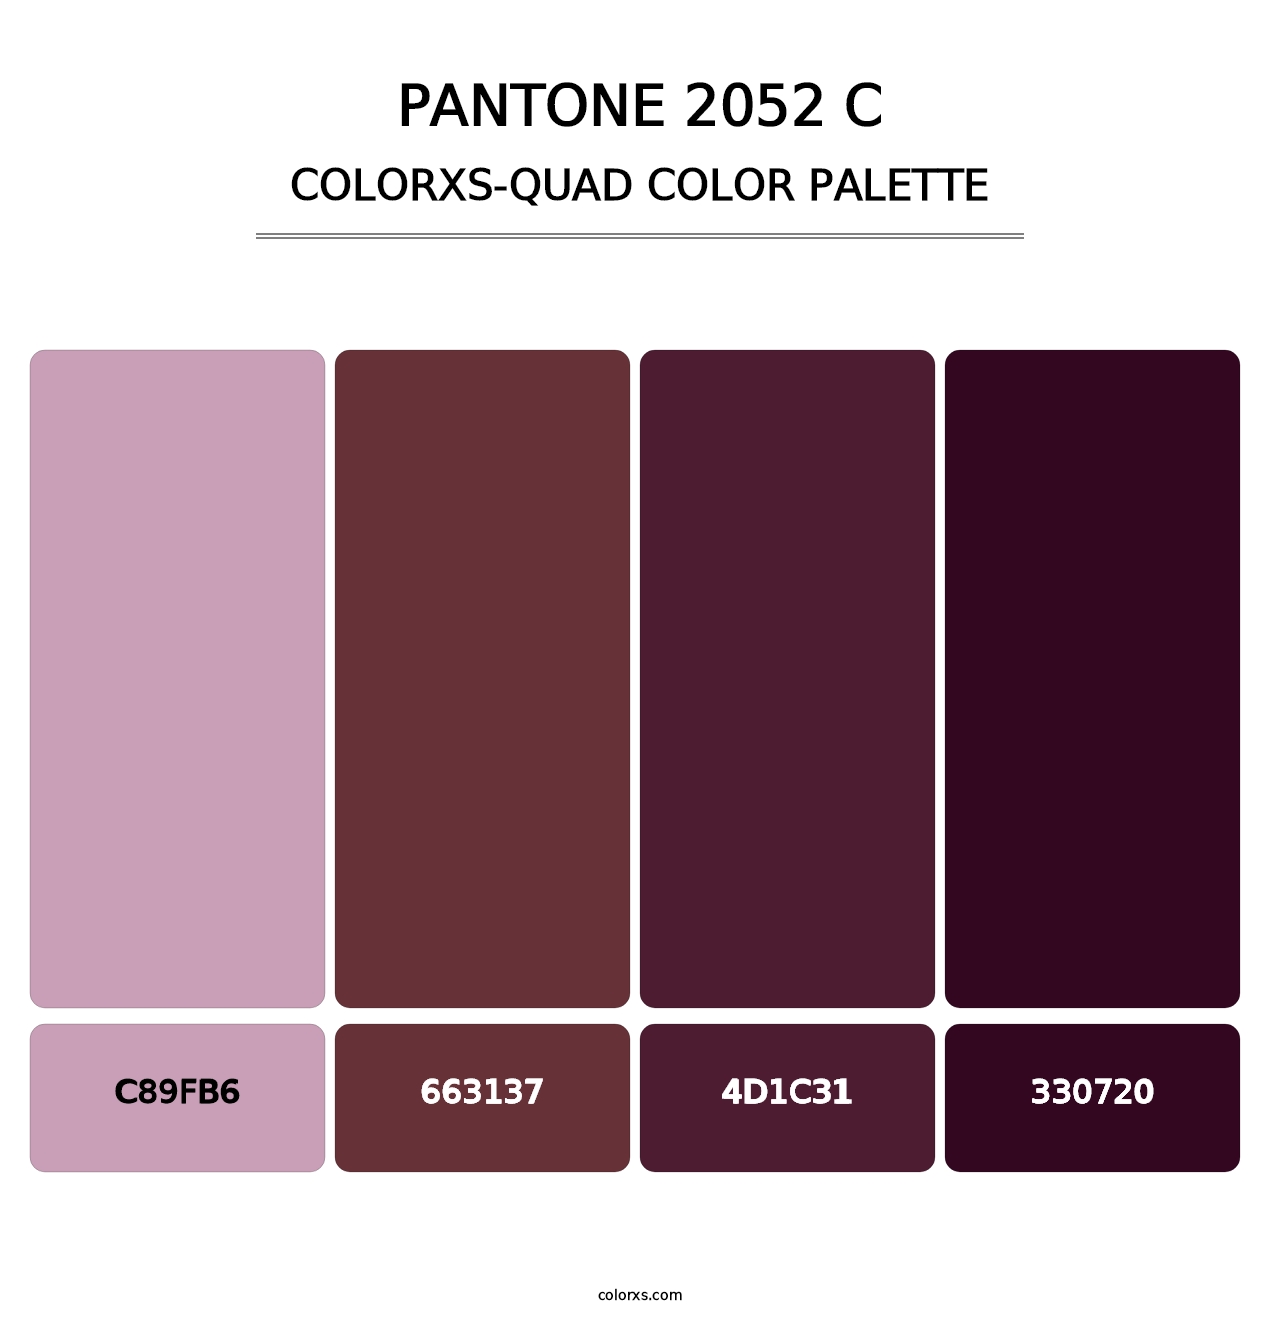 PANTONE 2052 C - Colorxs Quad Palette